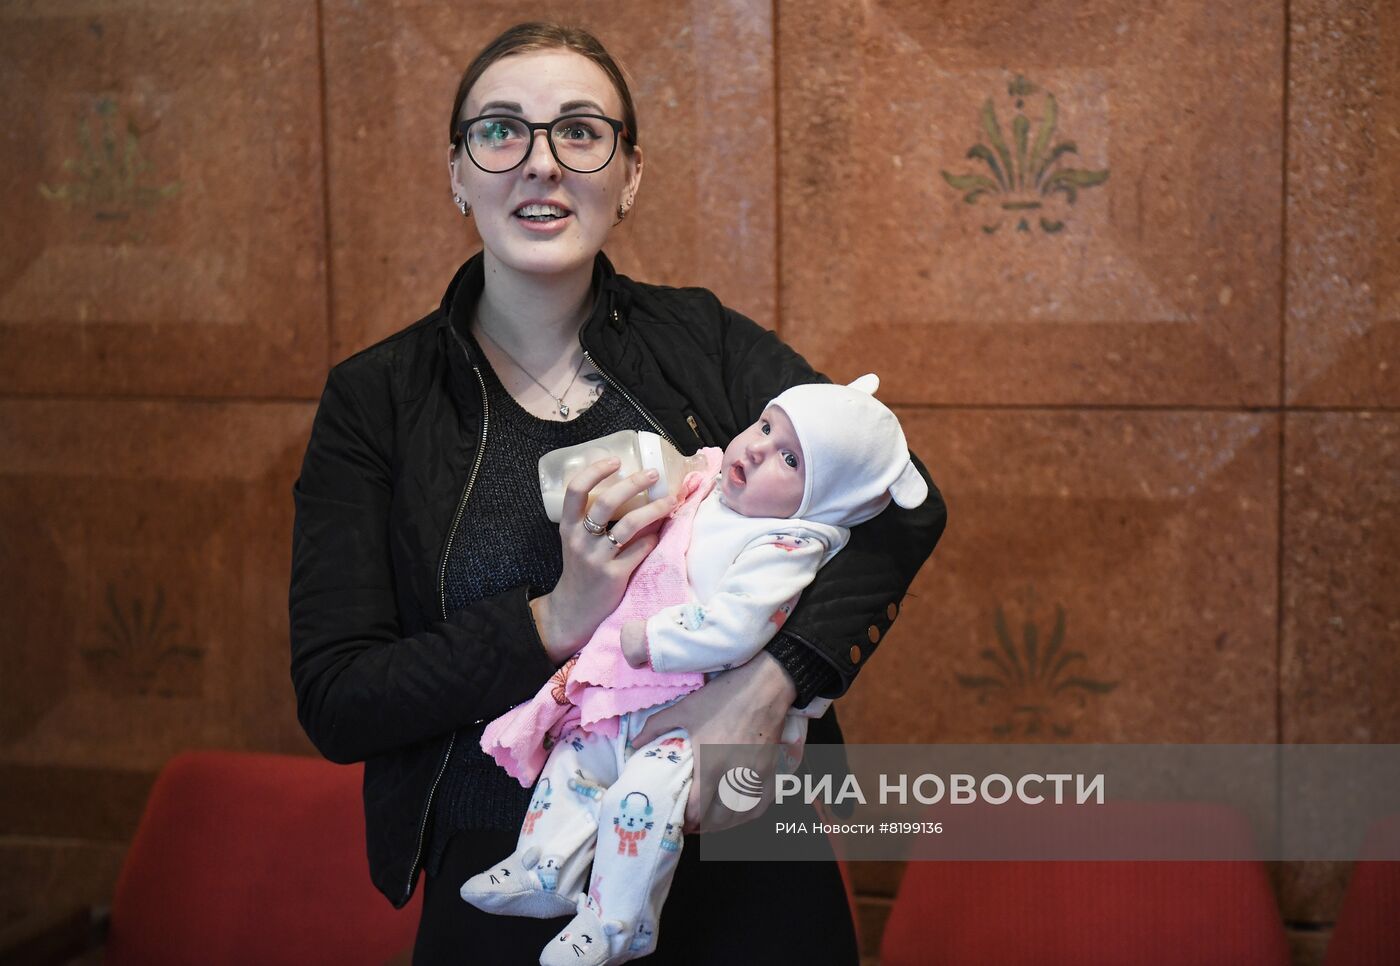 Выдача первых свидетельств о рождении образца ДНР под Мариуполем